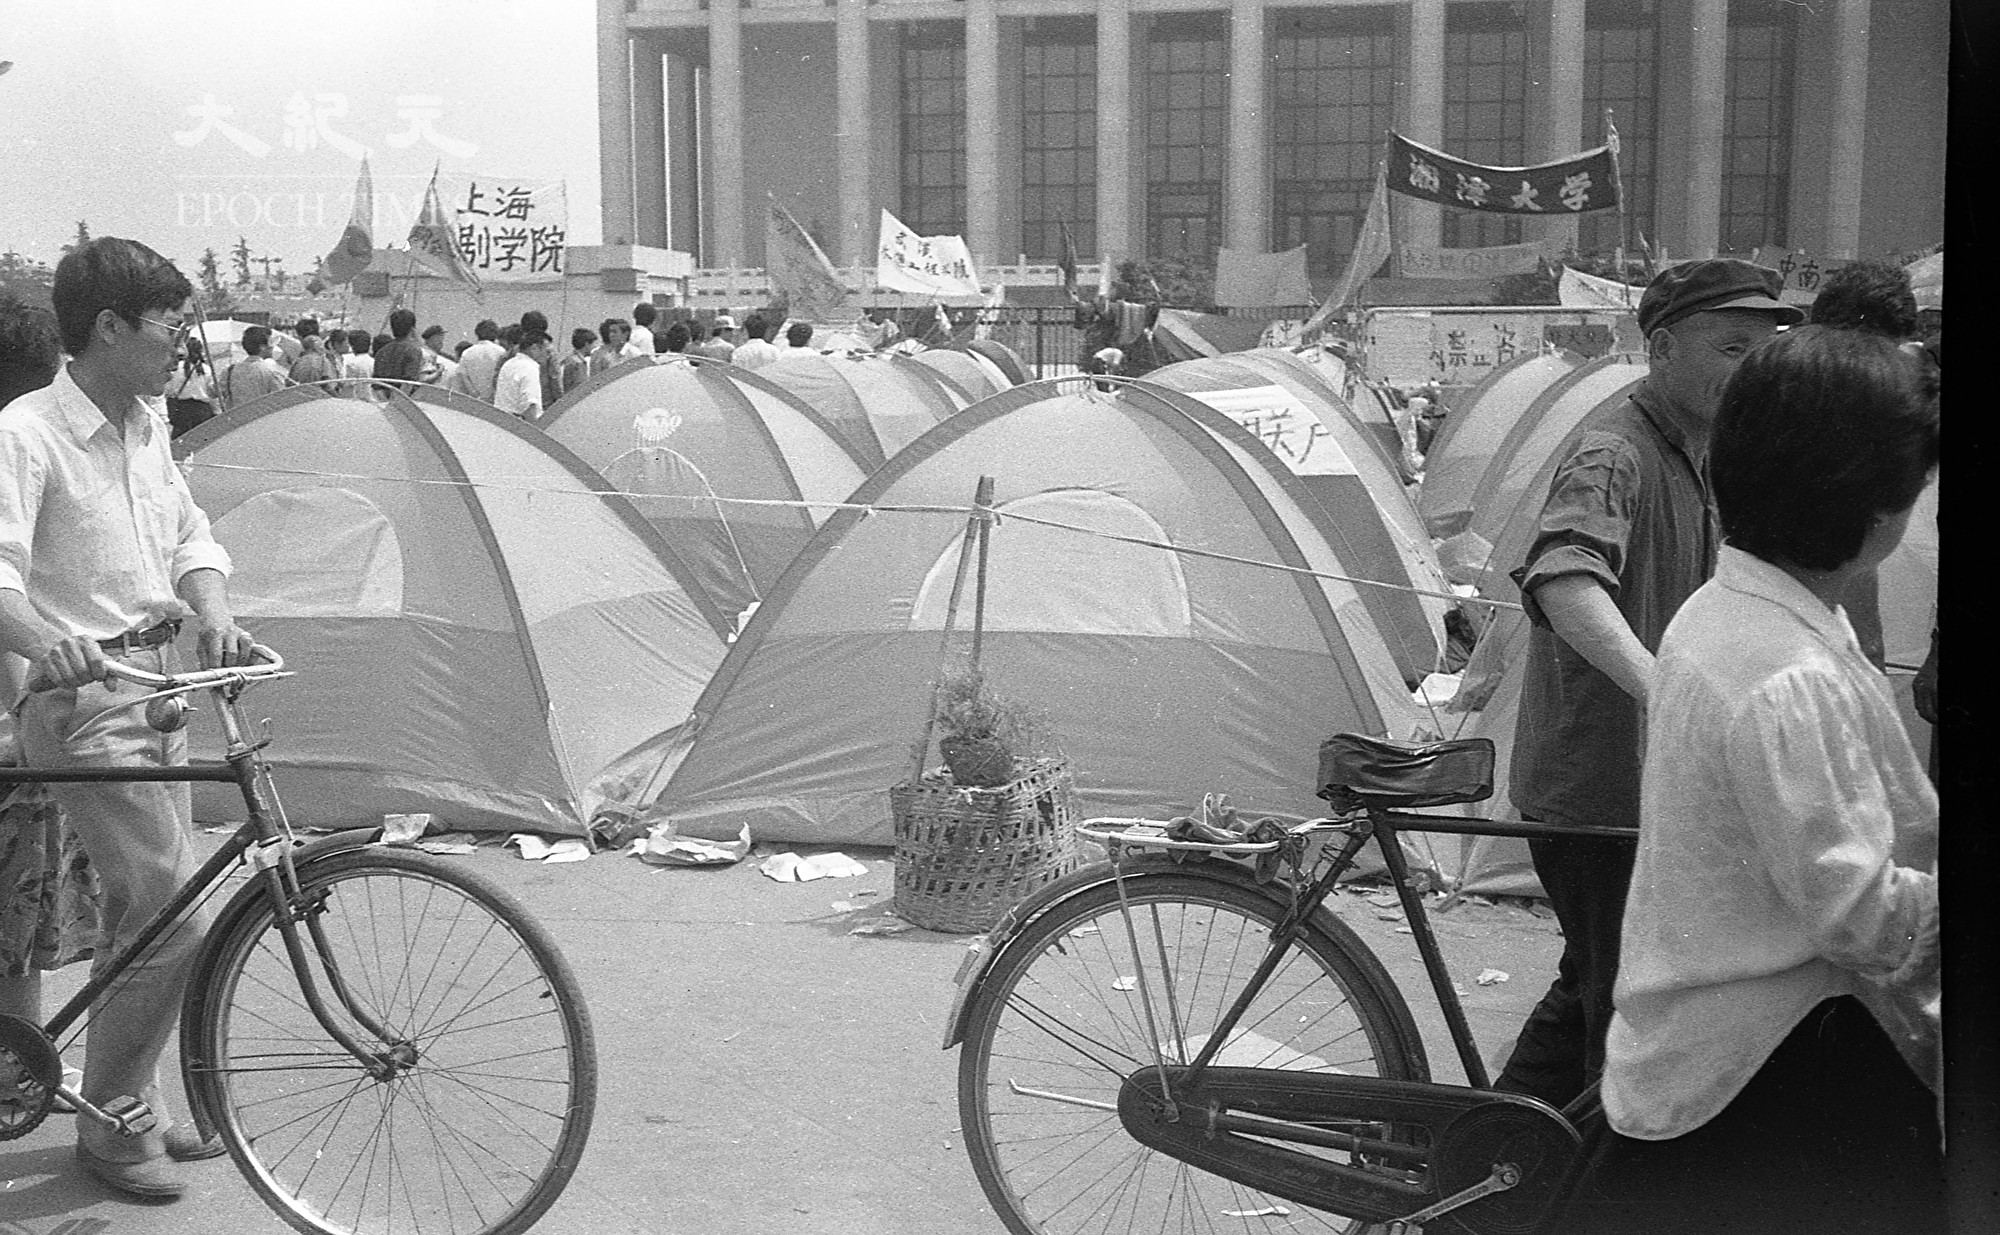 1989年六四前夕北京天安門廣場，香港民眾捐贈的帳篷。6月3日夜，當中共軍隊的坦克開進天安門廣場時，帳篷裏還有學生在睡覺。（蔣一平提供）